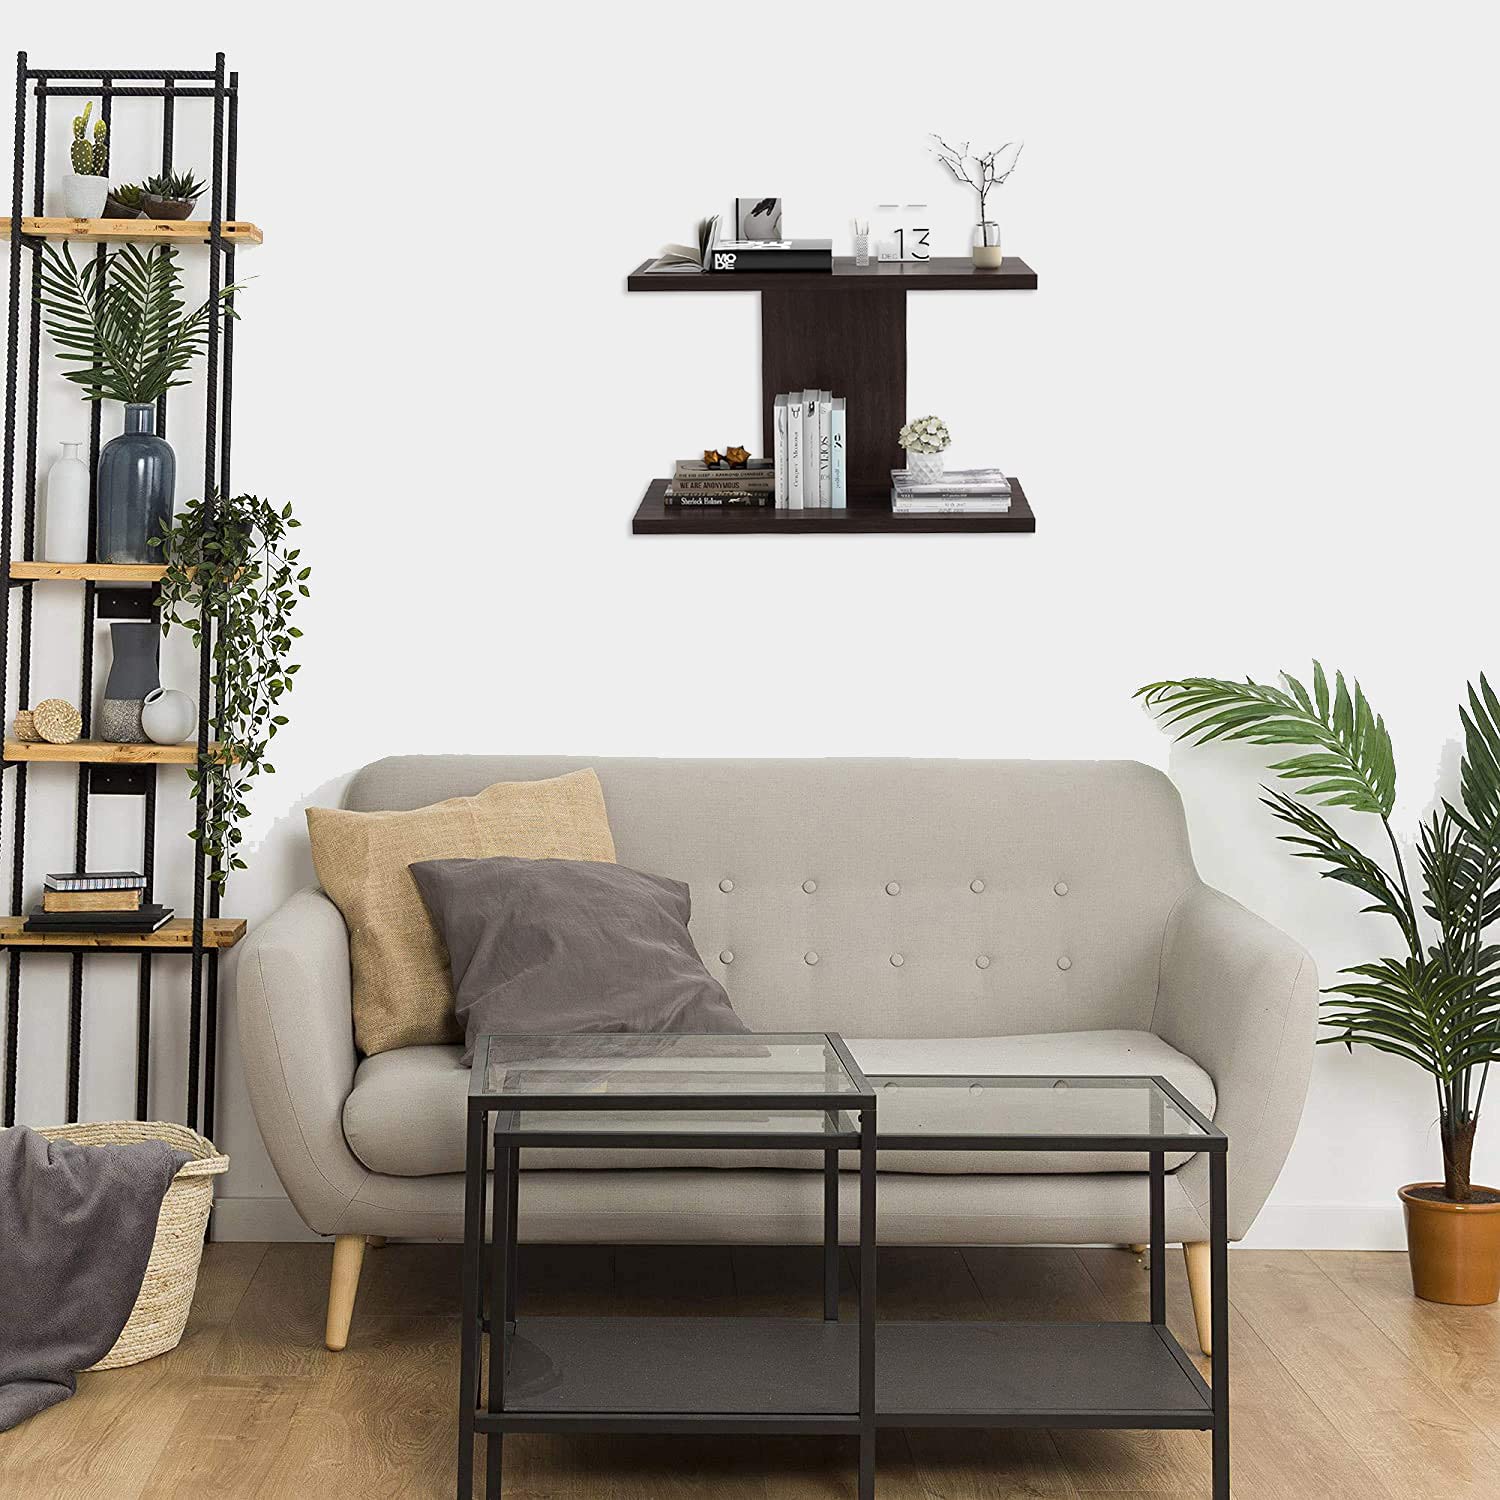 living room wall shelves | Interior Design Ideas